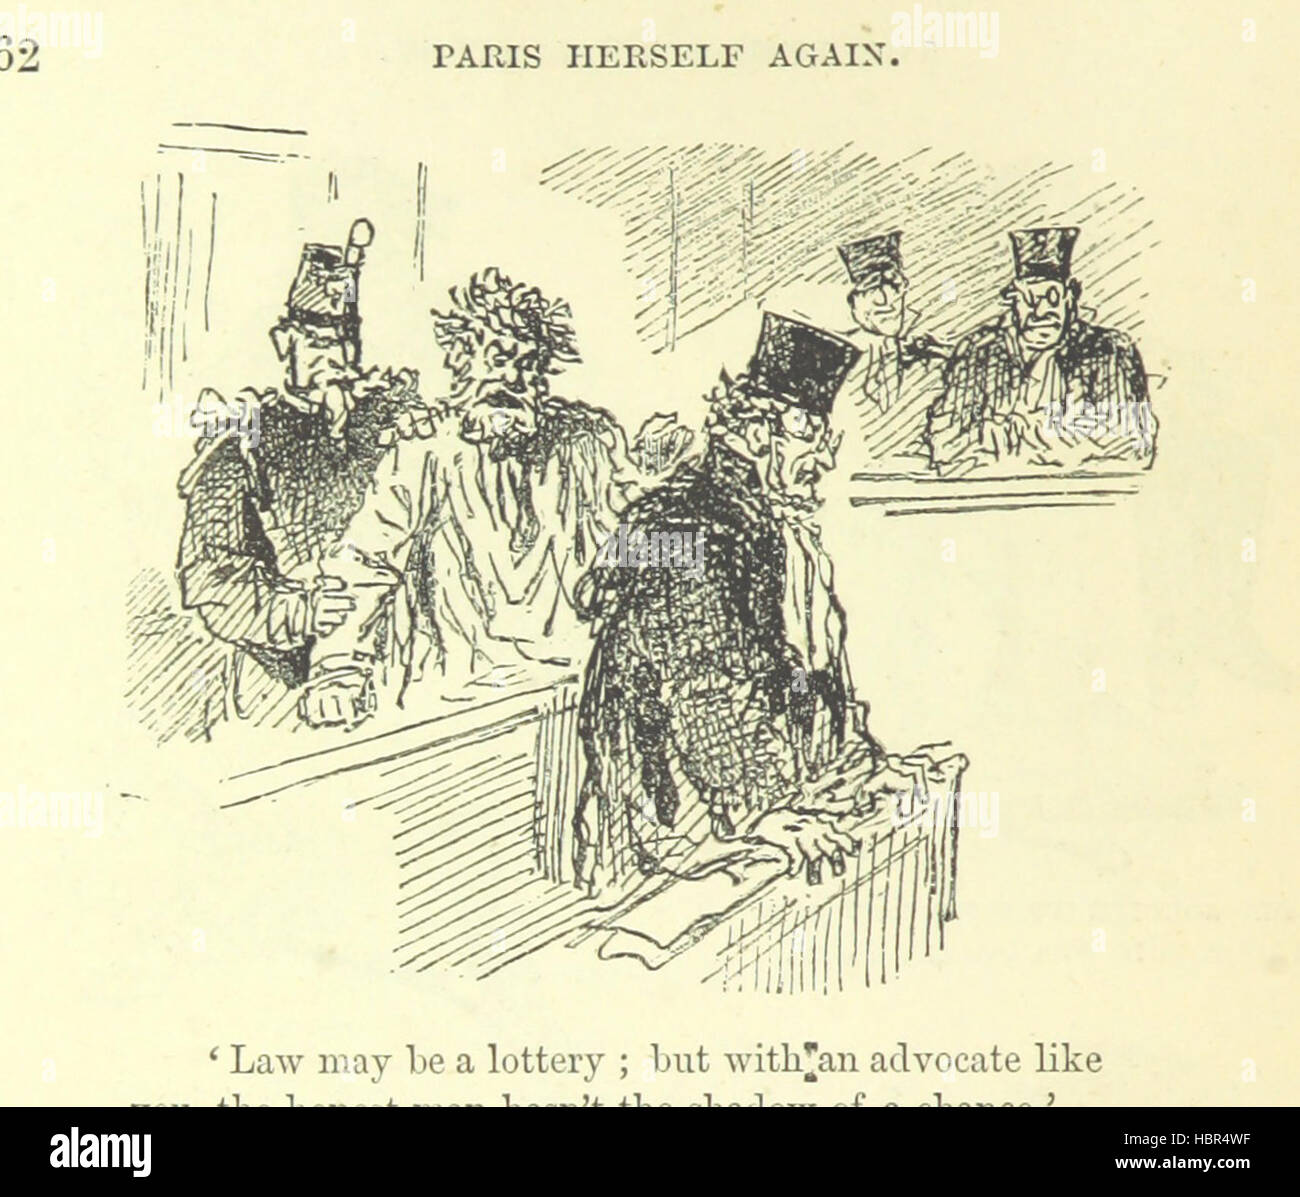 Bild entnommen Seite 192 von "Paris selbst wieder in 1878-9... Fünfte Ausgabe "Bild entnommen Seite 192 von" Paris selbst wieder in Stockfoto